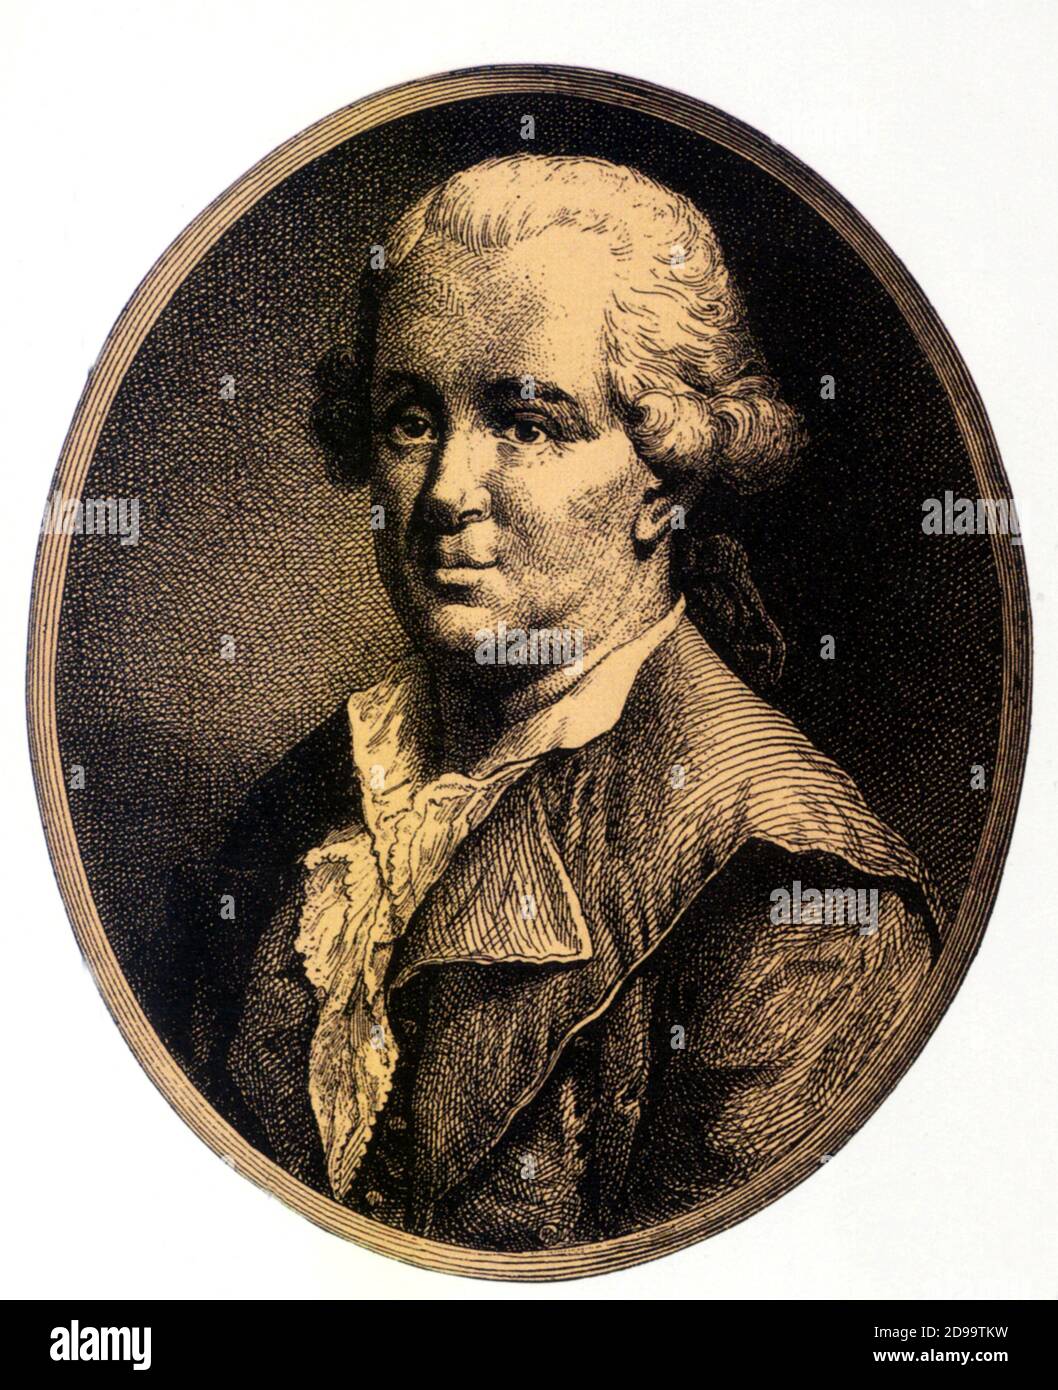 Il famoso medico austriaco Franz Anton MESMER ( 1734 - 1815 ) , teorico dei campi magnetici e dell'influenza astrologica dei pianeti , Fondato su ipnotismo e suggestione - CAMPI MAGNETICI - MAGNETISMO - MEDICINA - Healt - mago - mago - ASTROLOGIA - FISICA - MESMERISMO - IPNOTISMO - IPNOTISTA - MESMERISMO - PARAPSICOLOGIA - PARAPSICOLOGIA - SOGGESSIO - Archivio -- Foto Stock